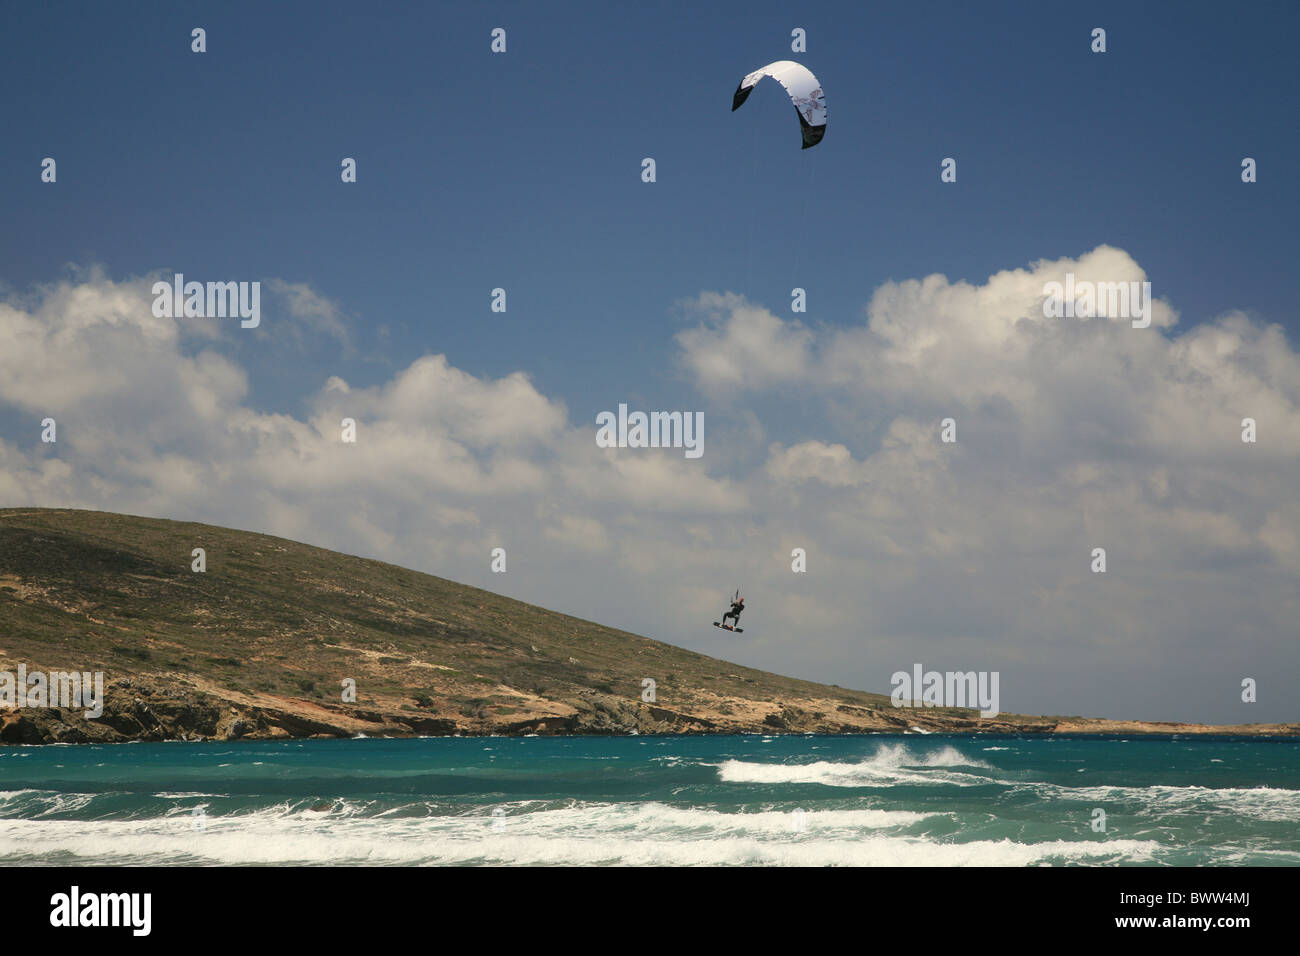 Un kite surfer prend de l'air au-dessus des flots Banque D'Images